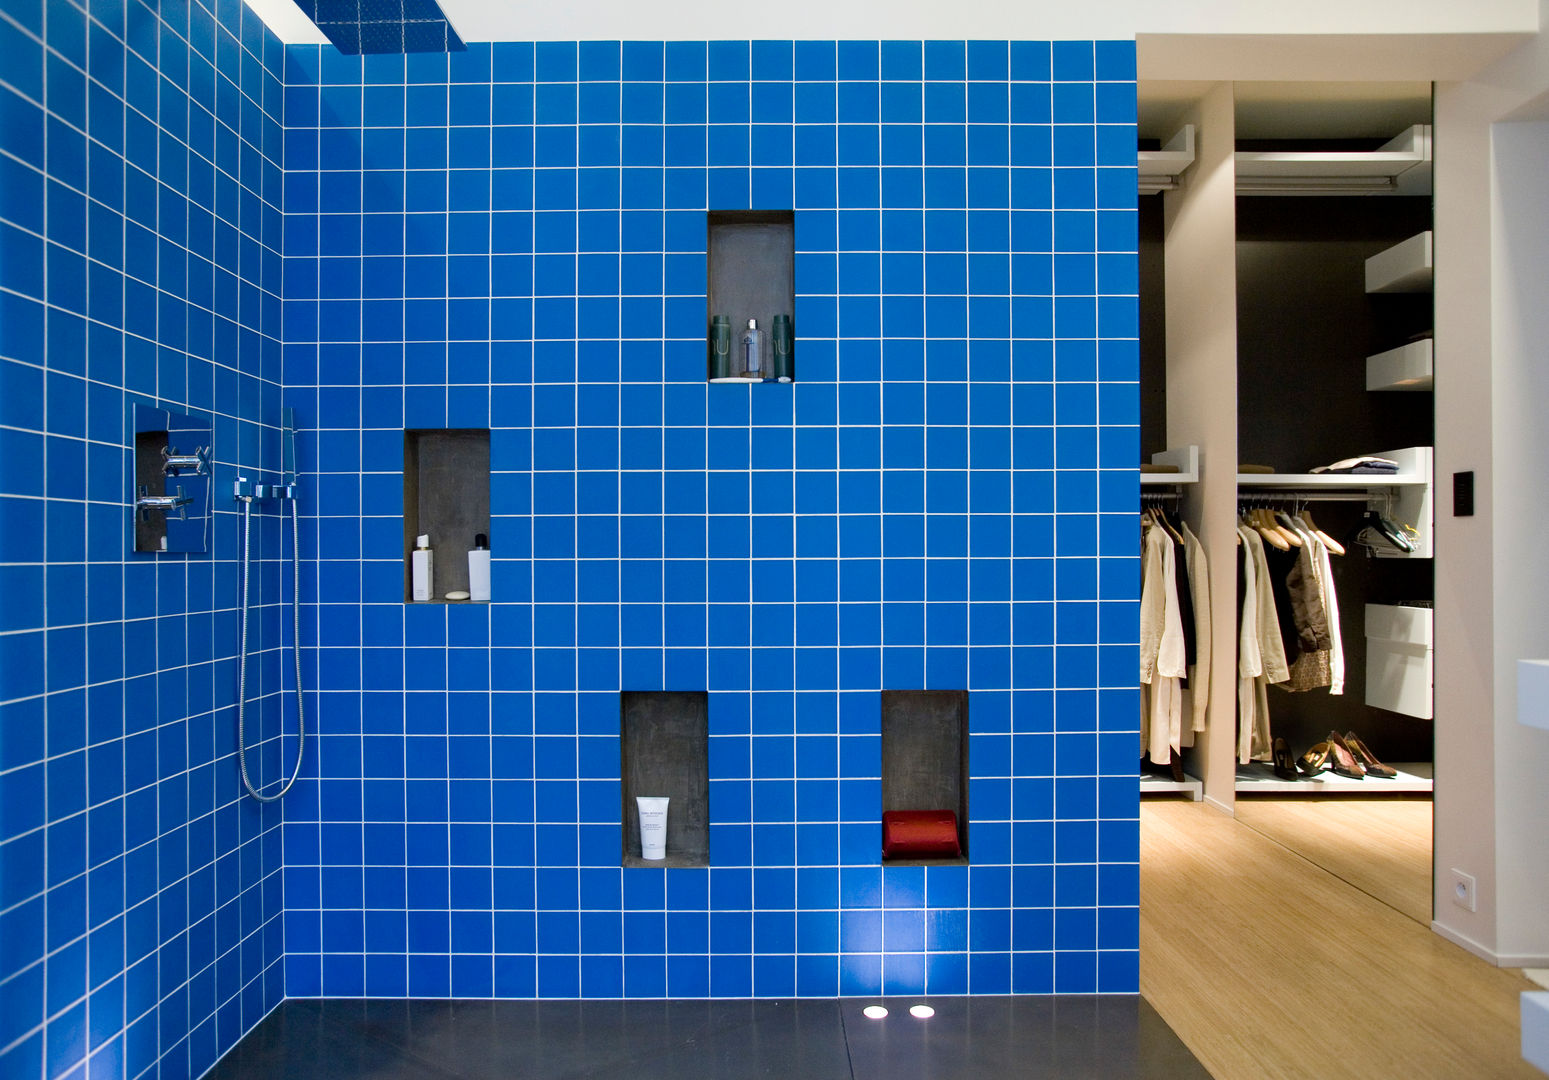 Appartement d’un collectionneur d’art contemporain-Paris-17e, ATELIER FB ATELIER FB Modern bathroom